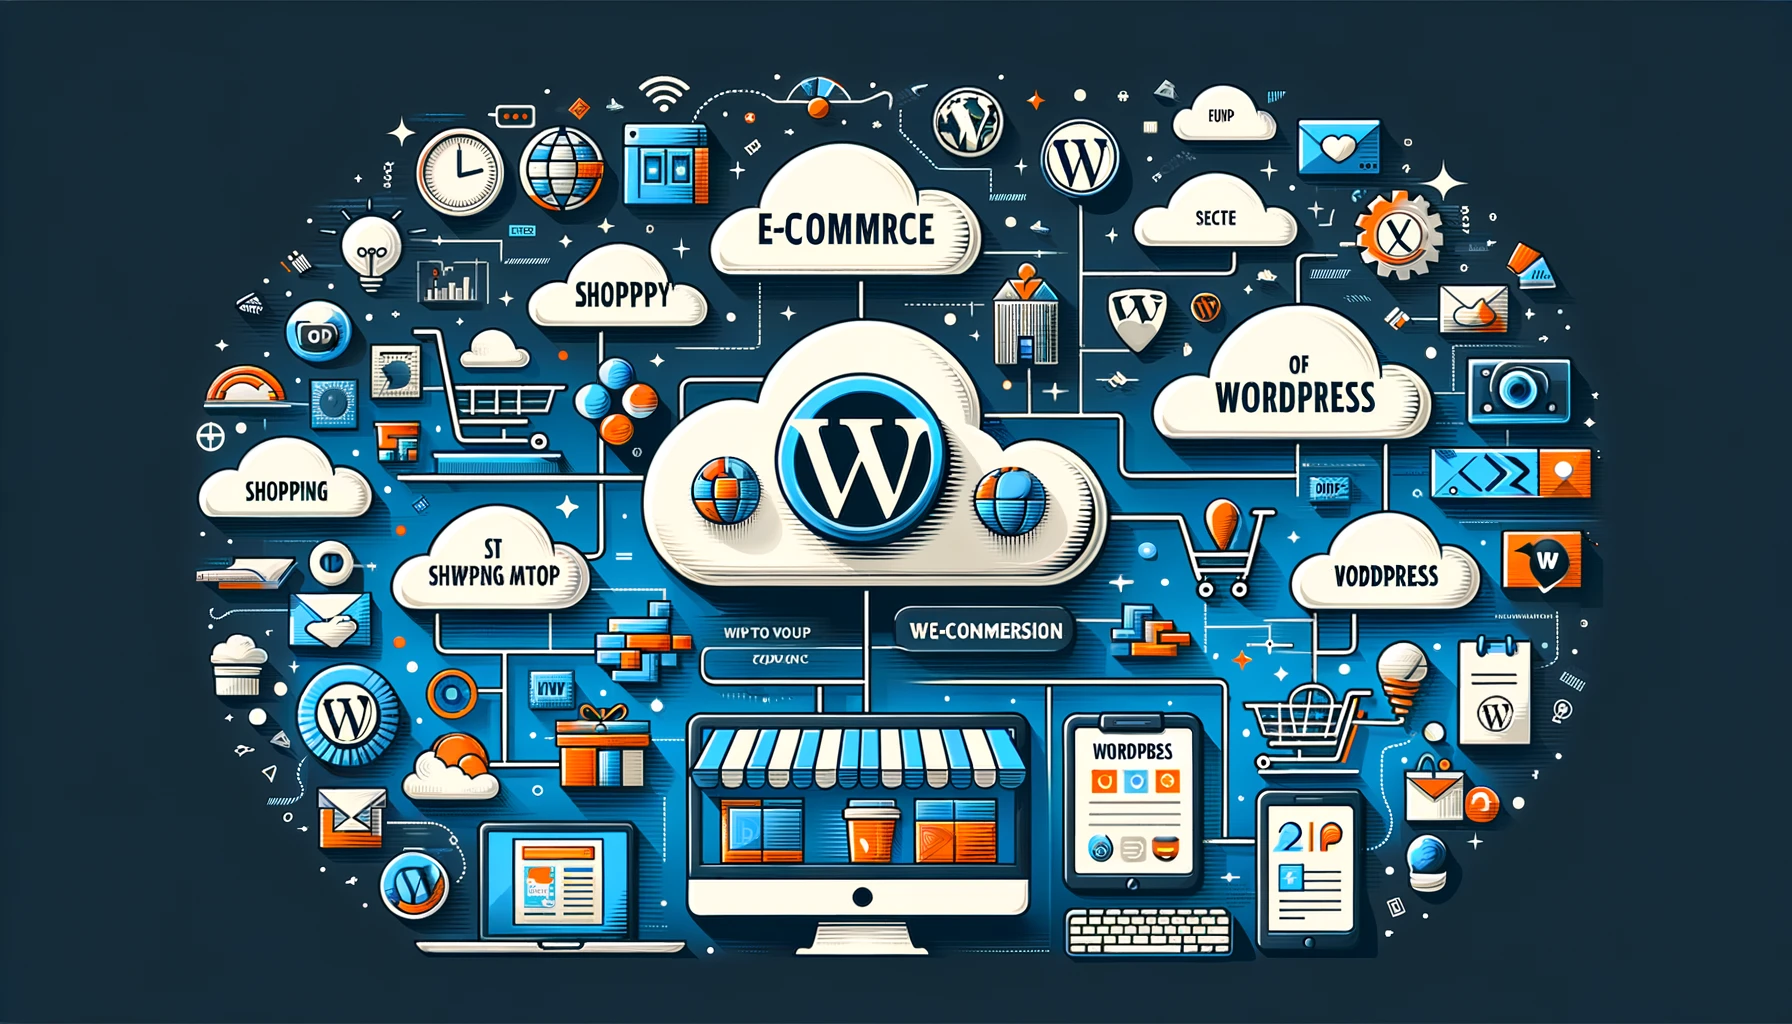 lista de servicios de weppa cloud: wordpress, servidores, copias de seguridad, equipo de soporte